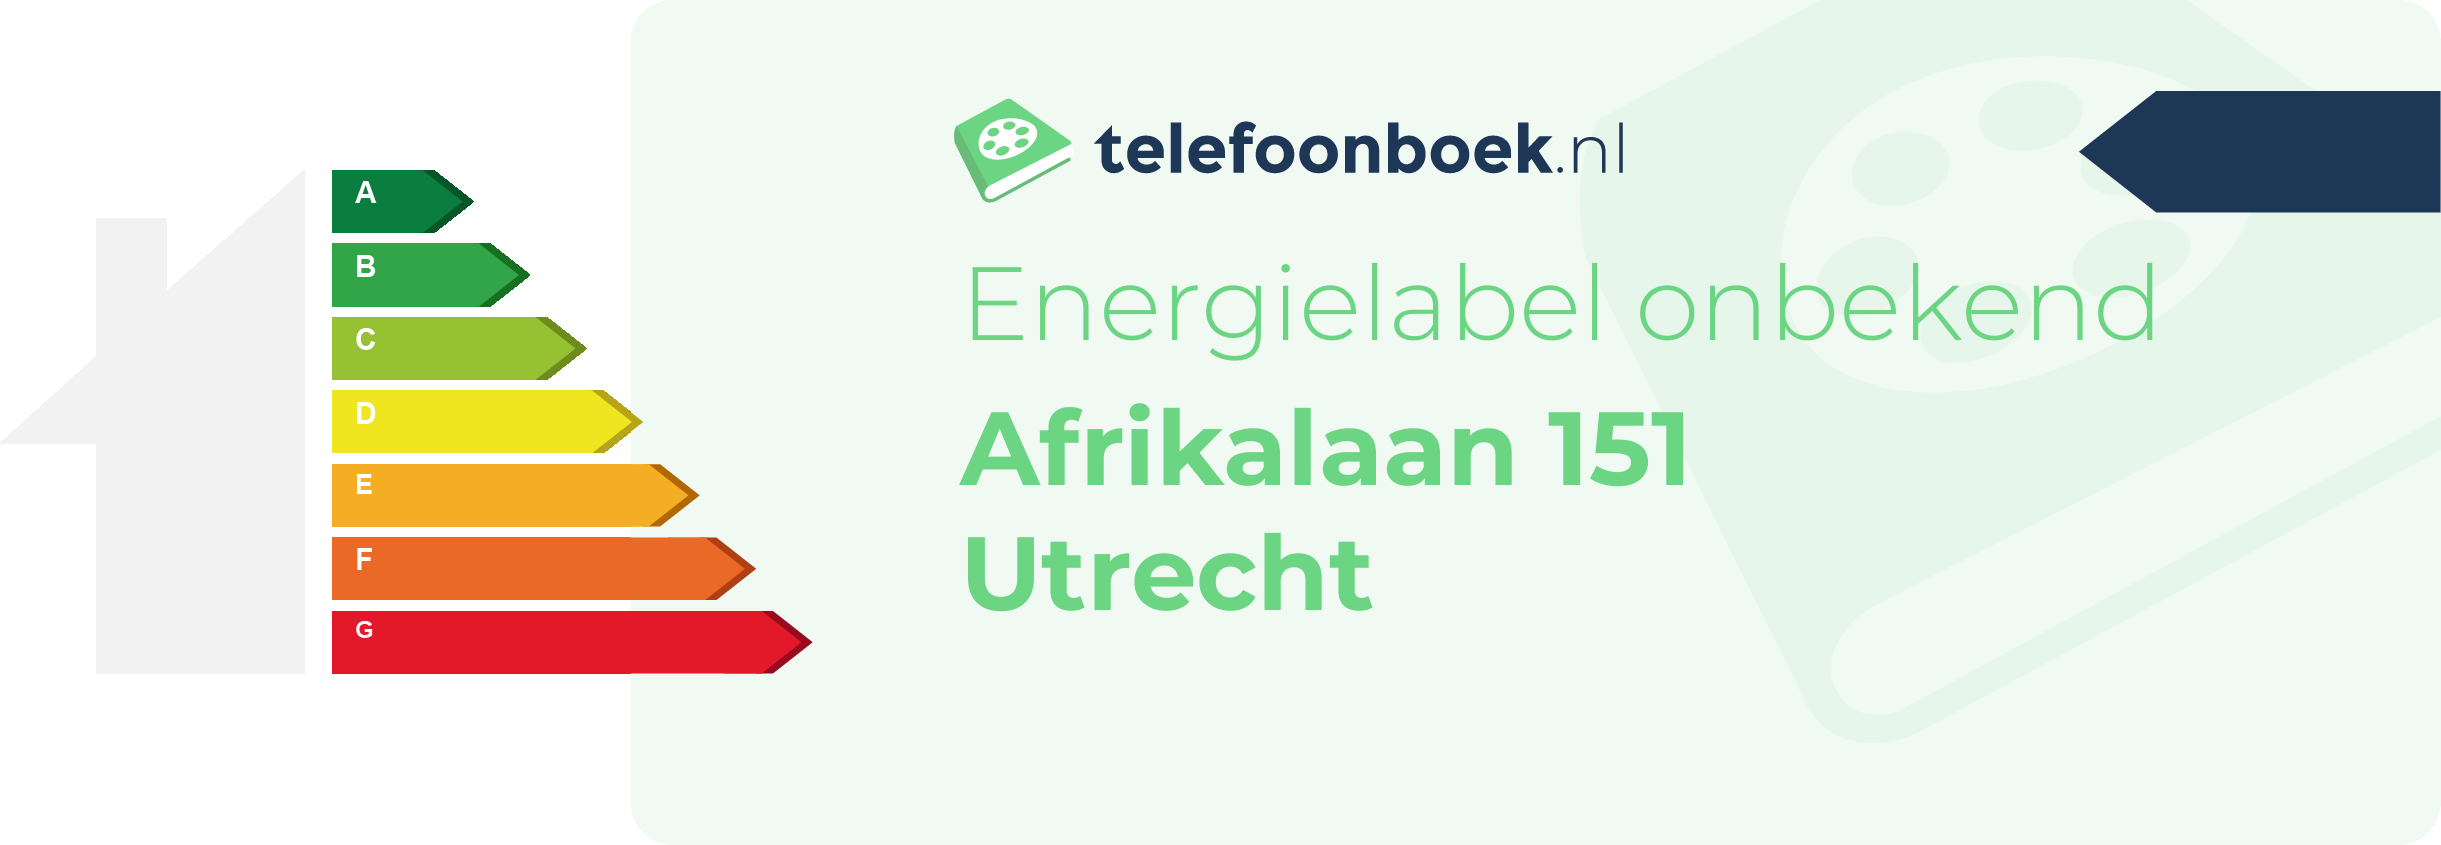 Energielabel Afrikalaan 151 Utrecht